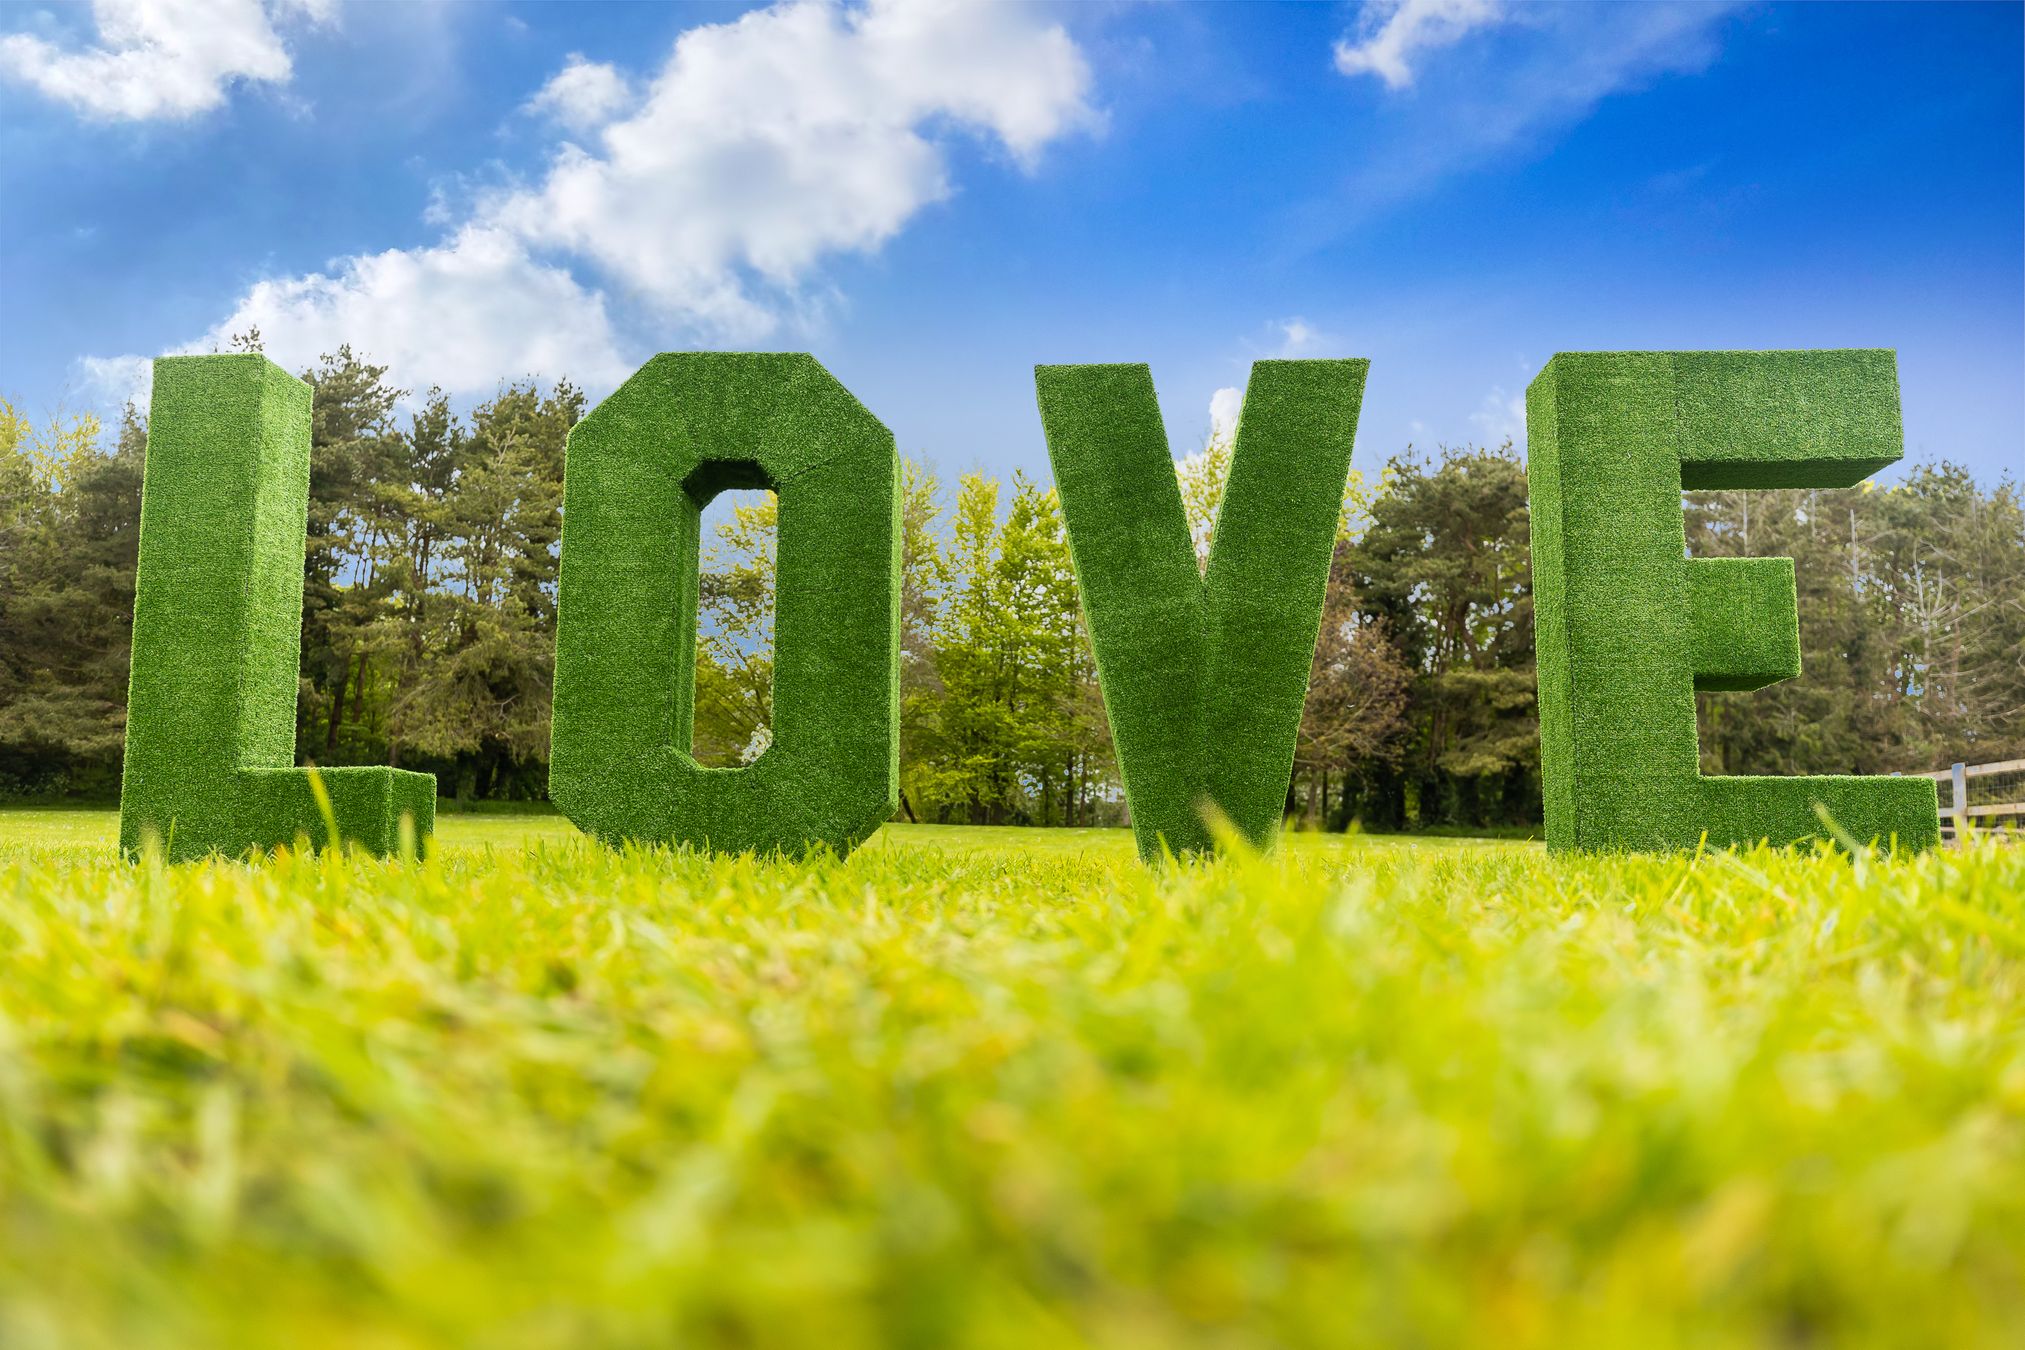 Grass Letters in a meadow based in Norwich